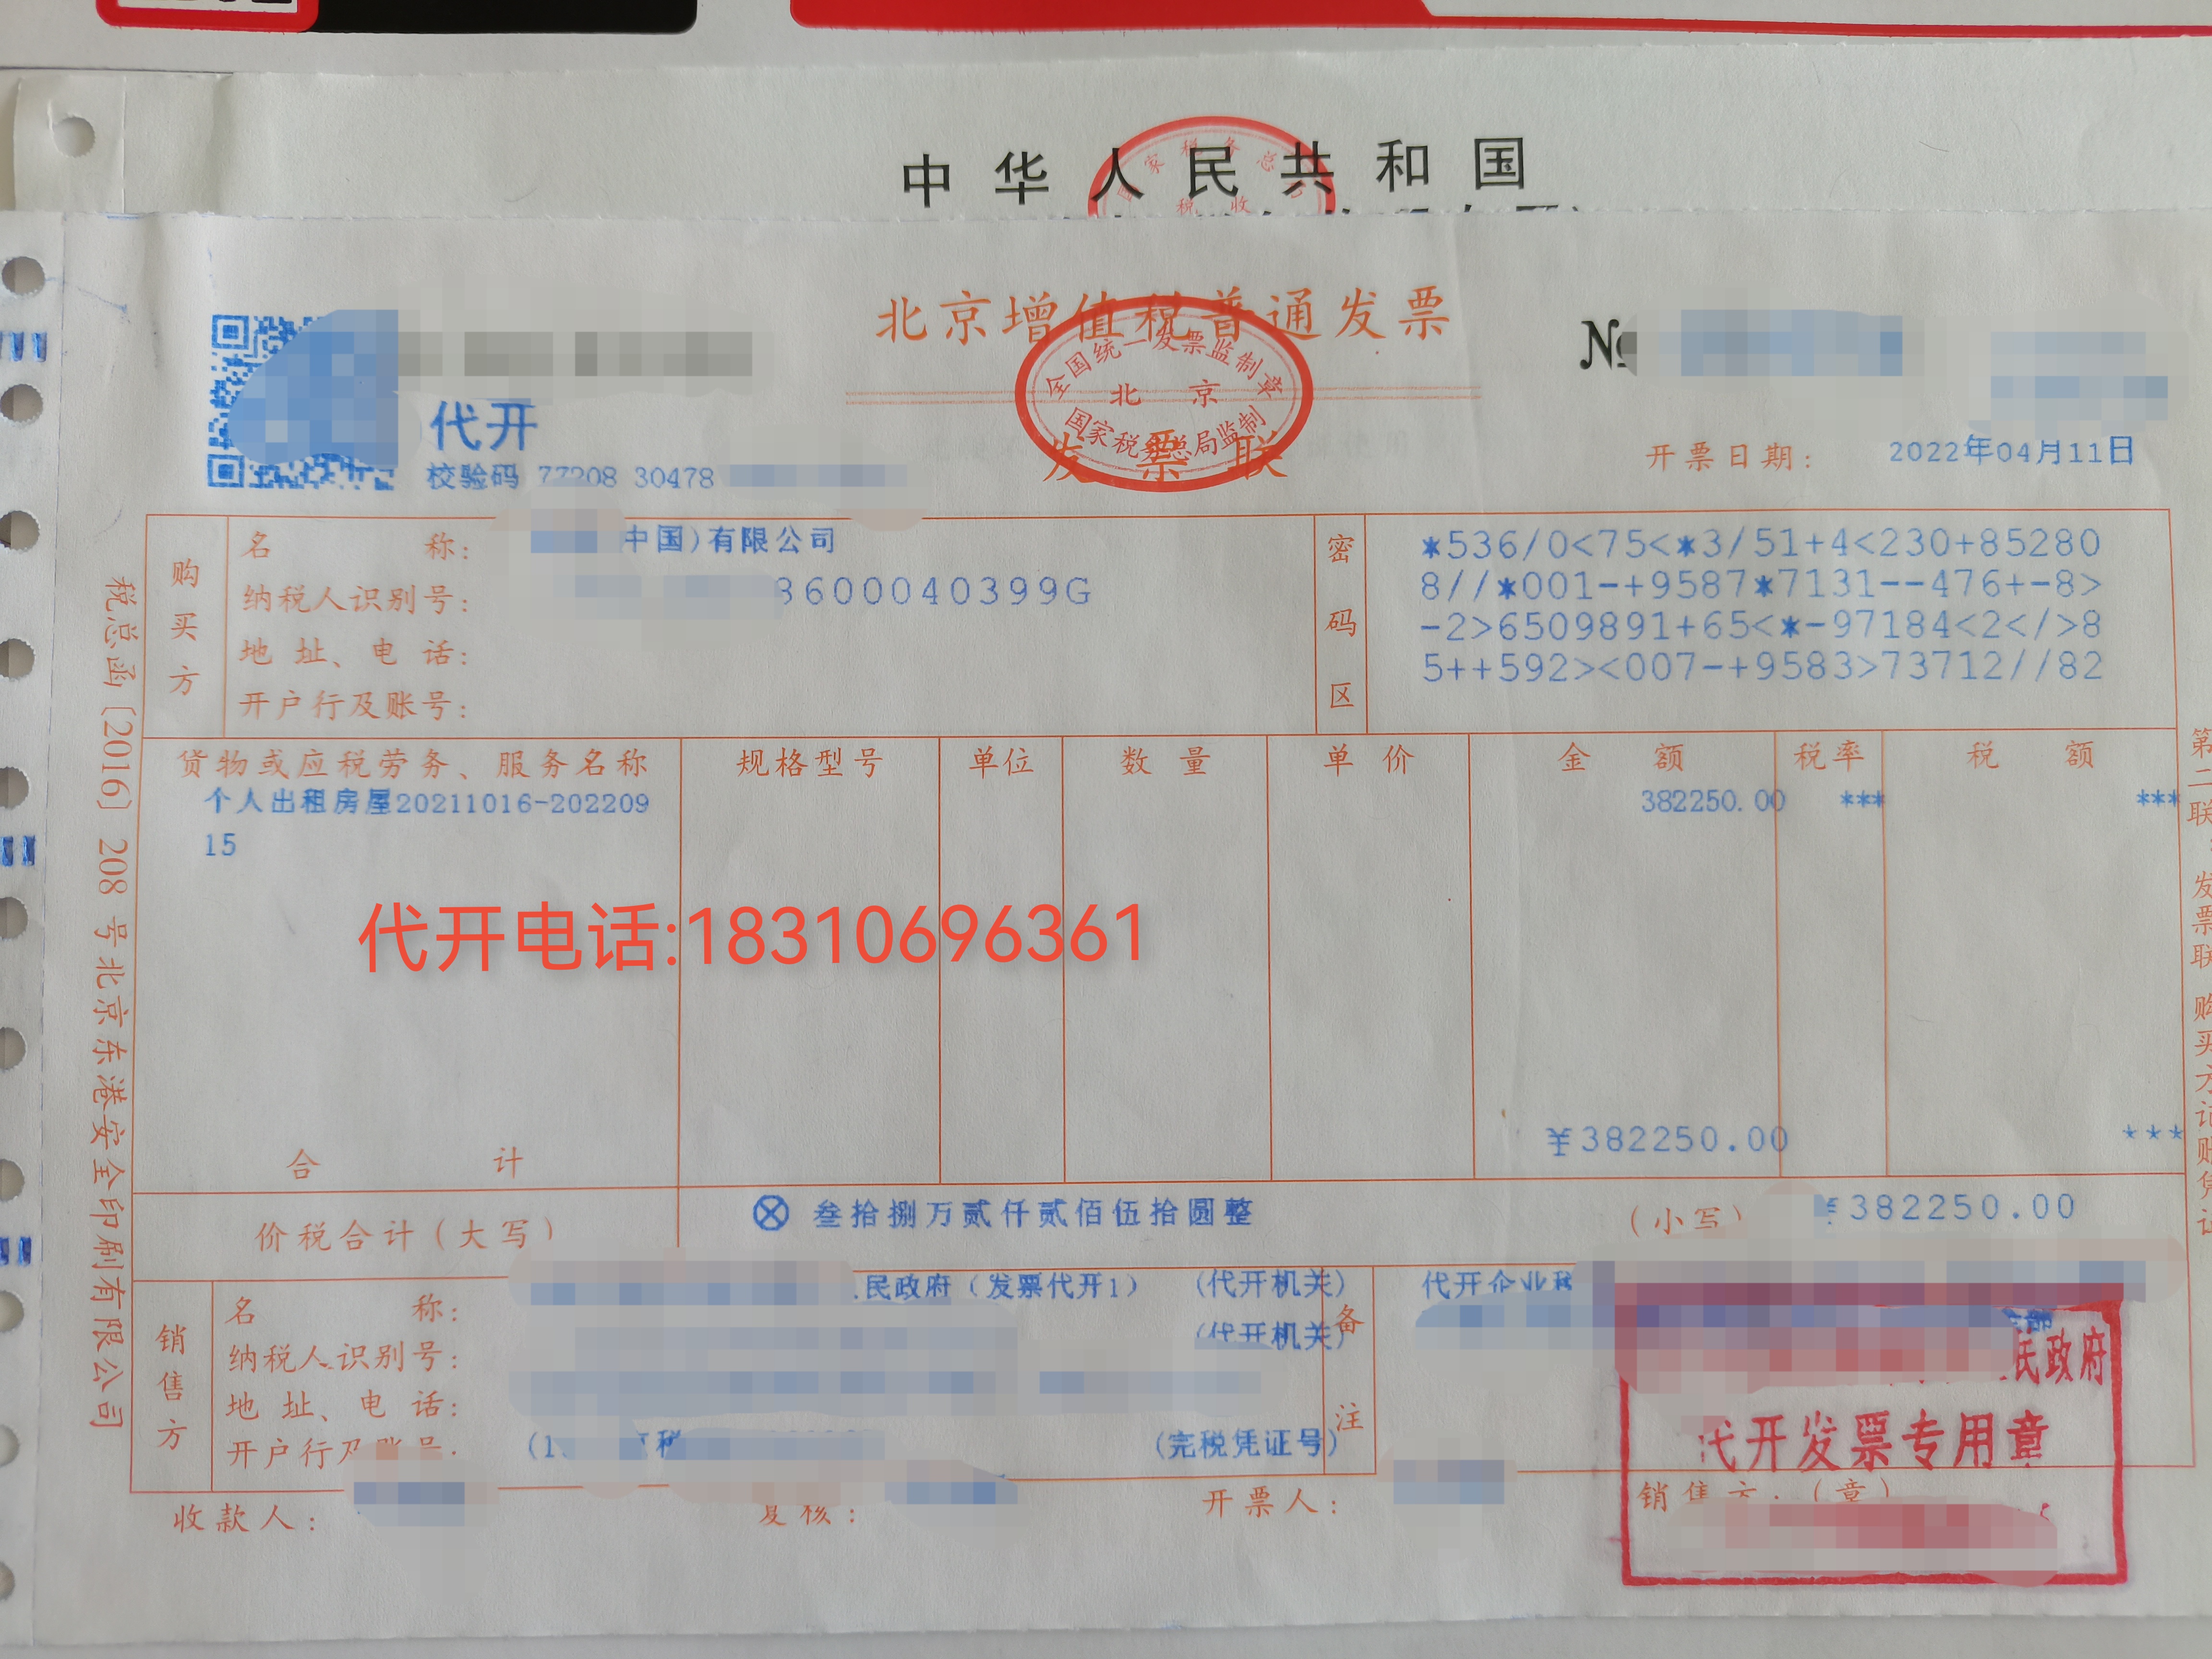 北京个人房屋租赁发票有什么用途?